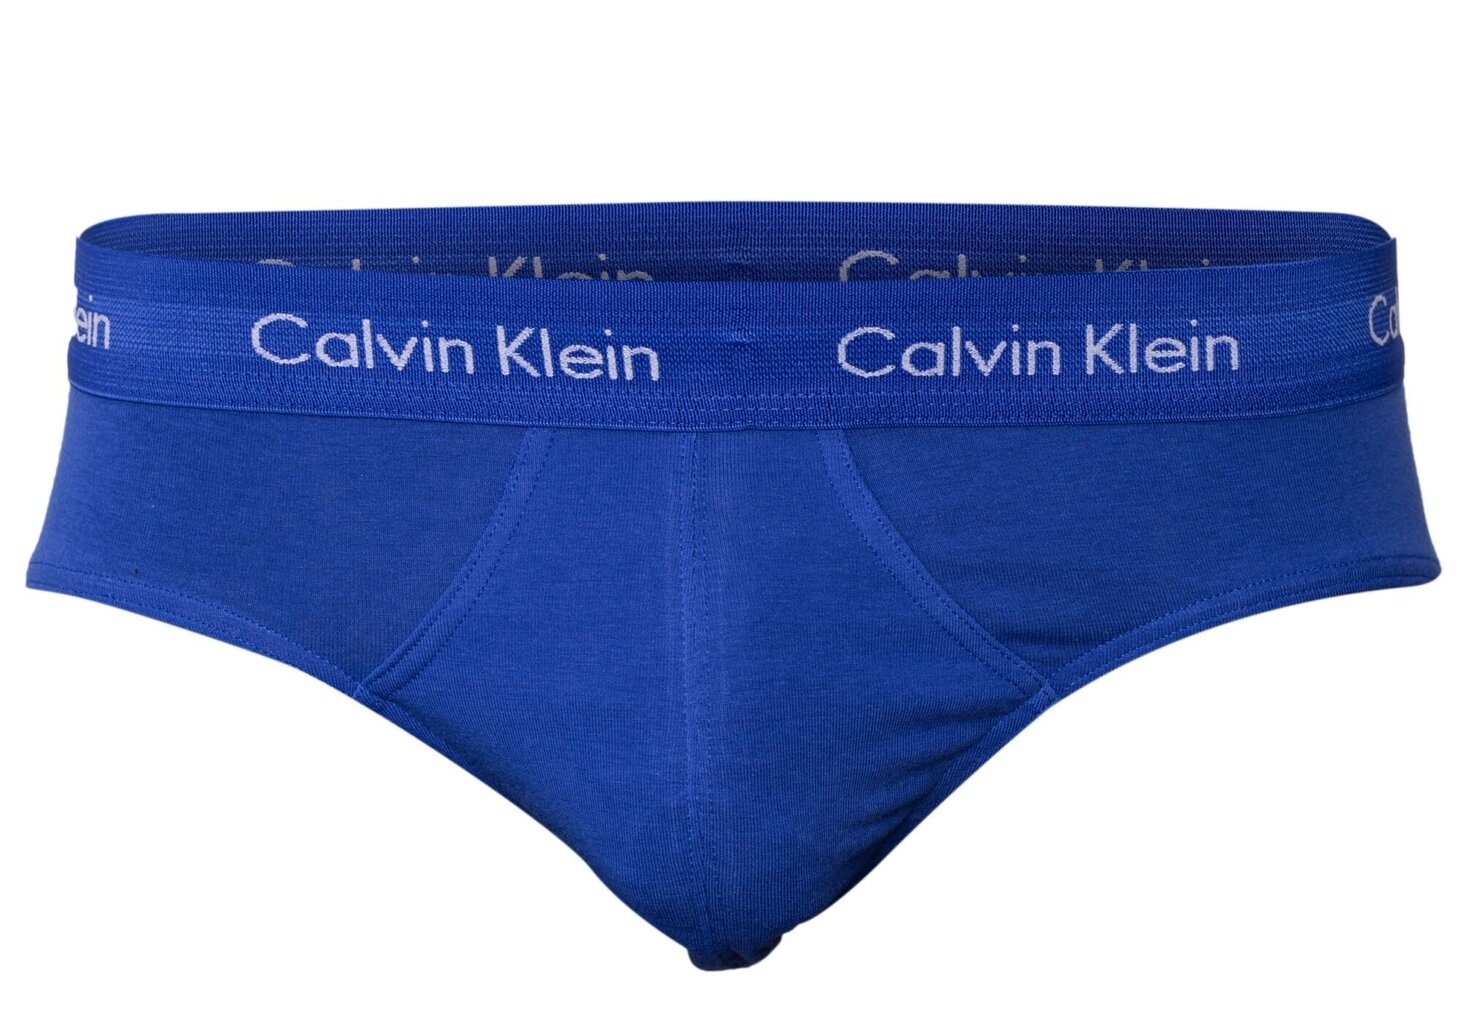 Apakšbikses vīriešiem Calvin Klein, kokvilnas, elastīgas, 3 gab., zilas/tumši zilas/melnas U2661G 4KU 14057 cena un informācija | Vīriešu apakšbikses | 220.lv